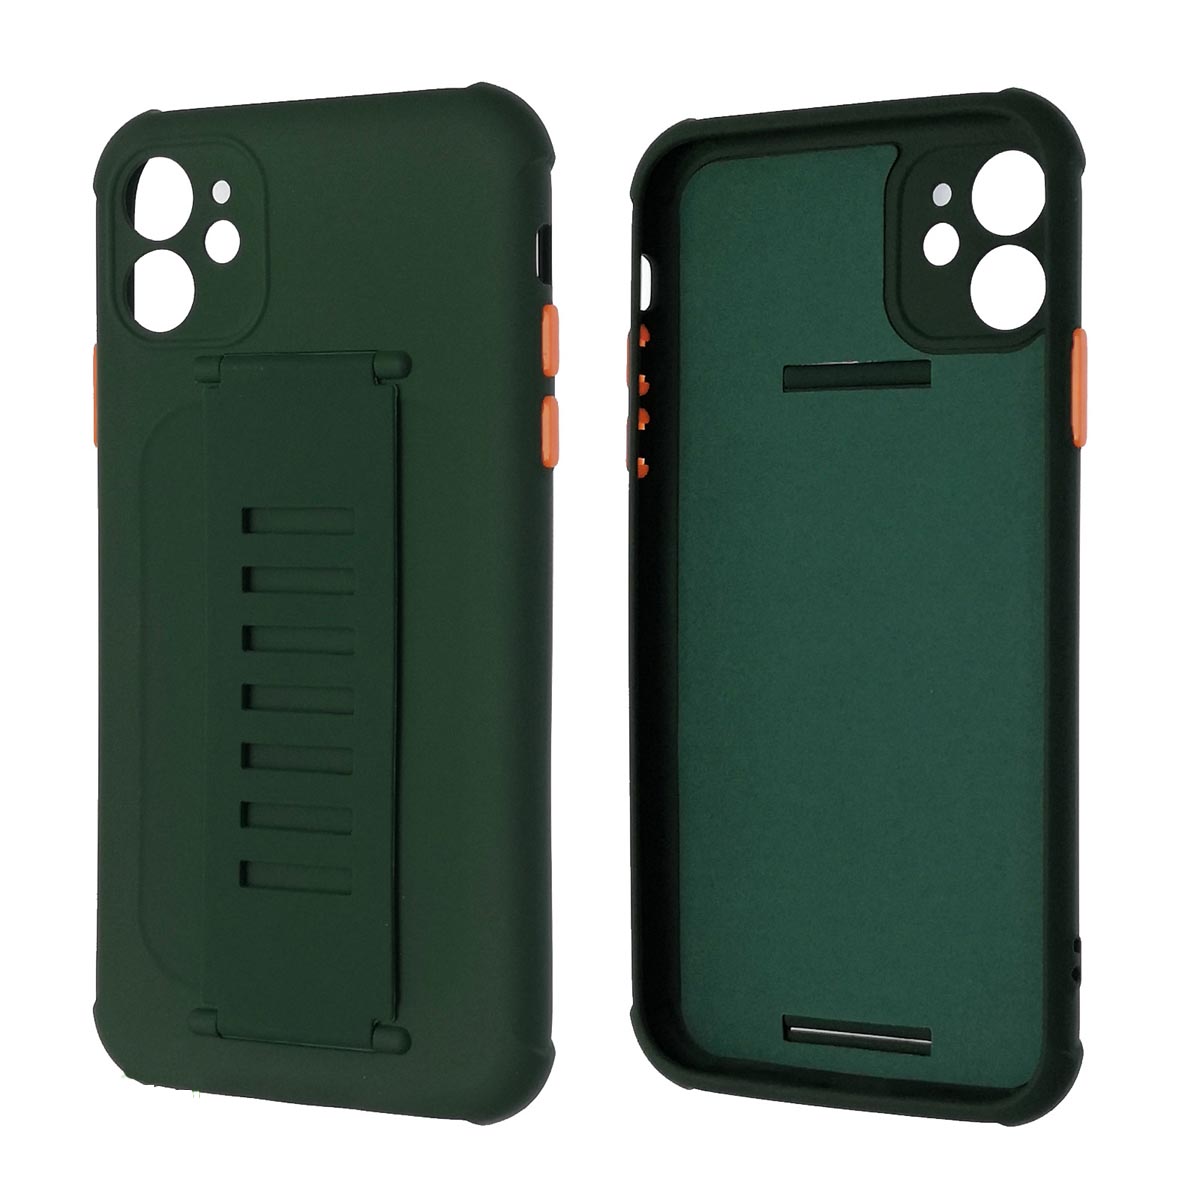 Чехол накладка LADDER NANO для APPLE iPhone 11, силикон, держатель, цвет темно зеленый